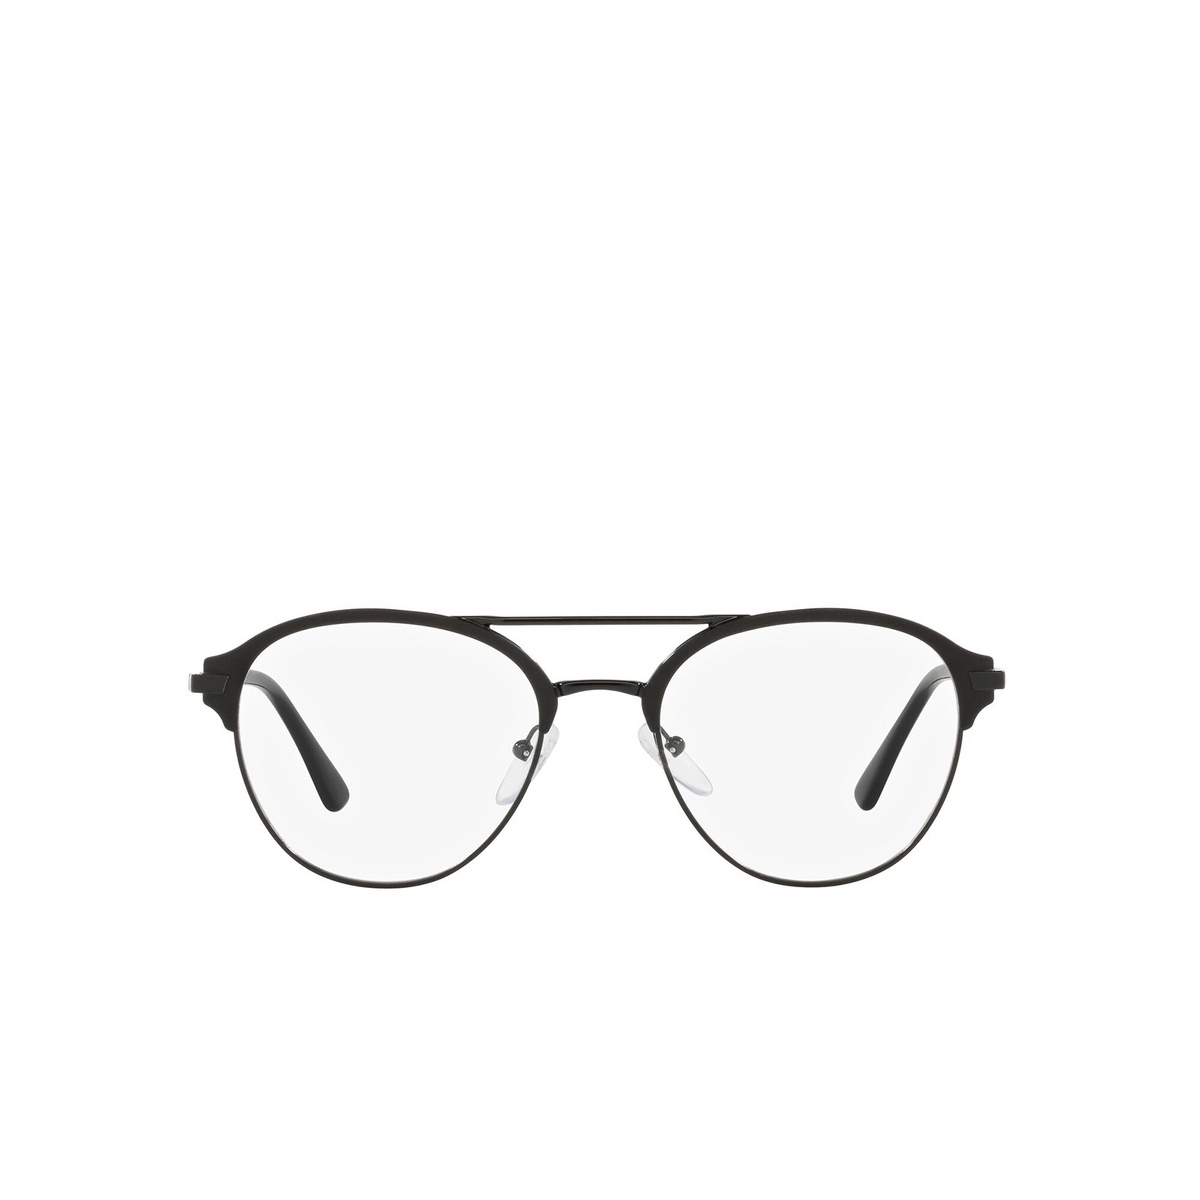 Prada® Aviator Eyeglasses: PR 61WV color Matte Black / Black 07F1O1 - front view.